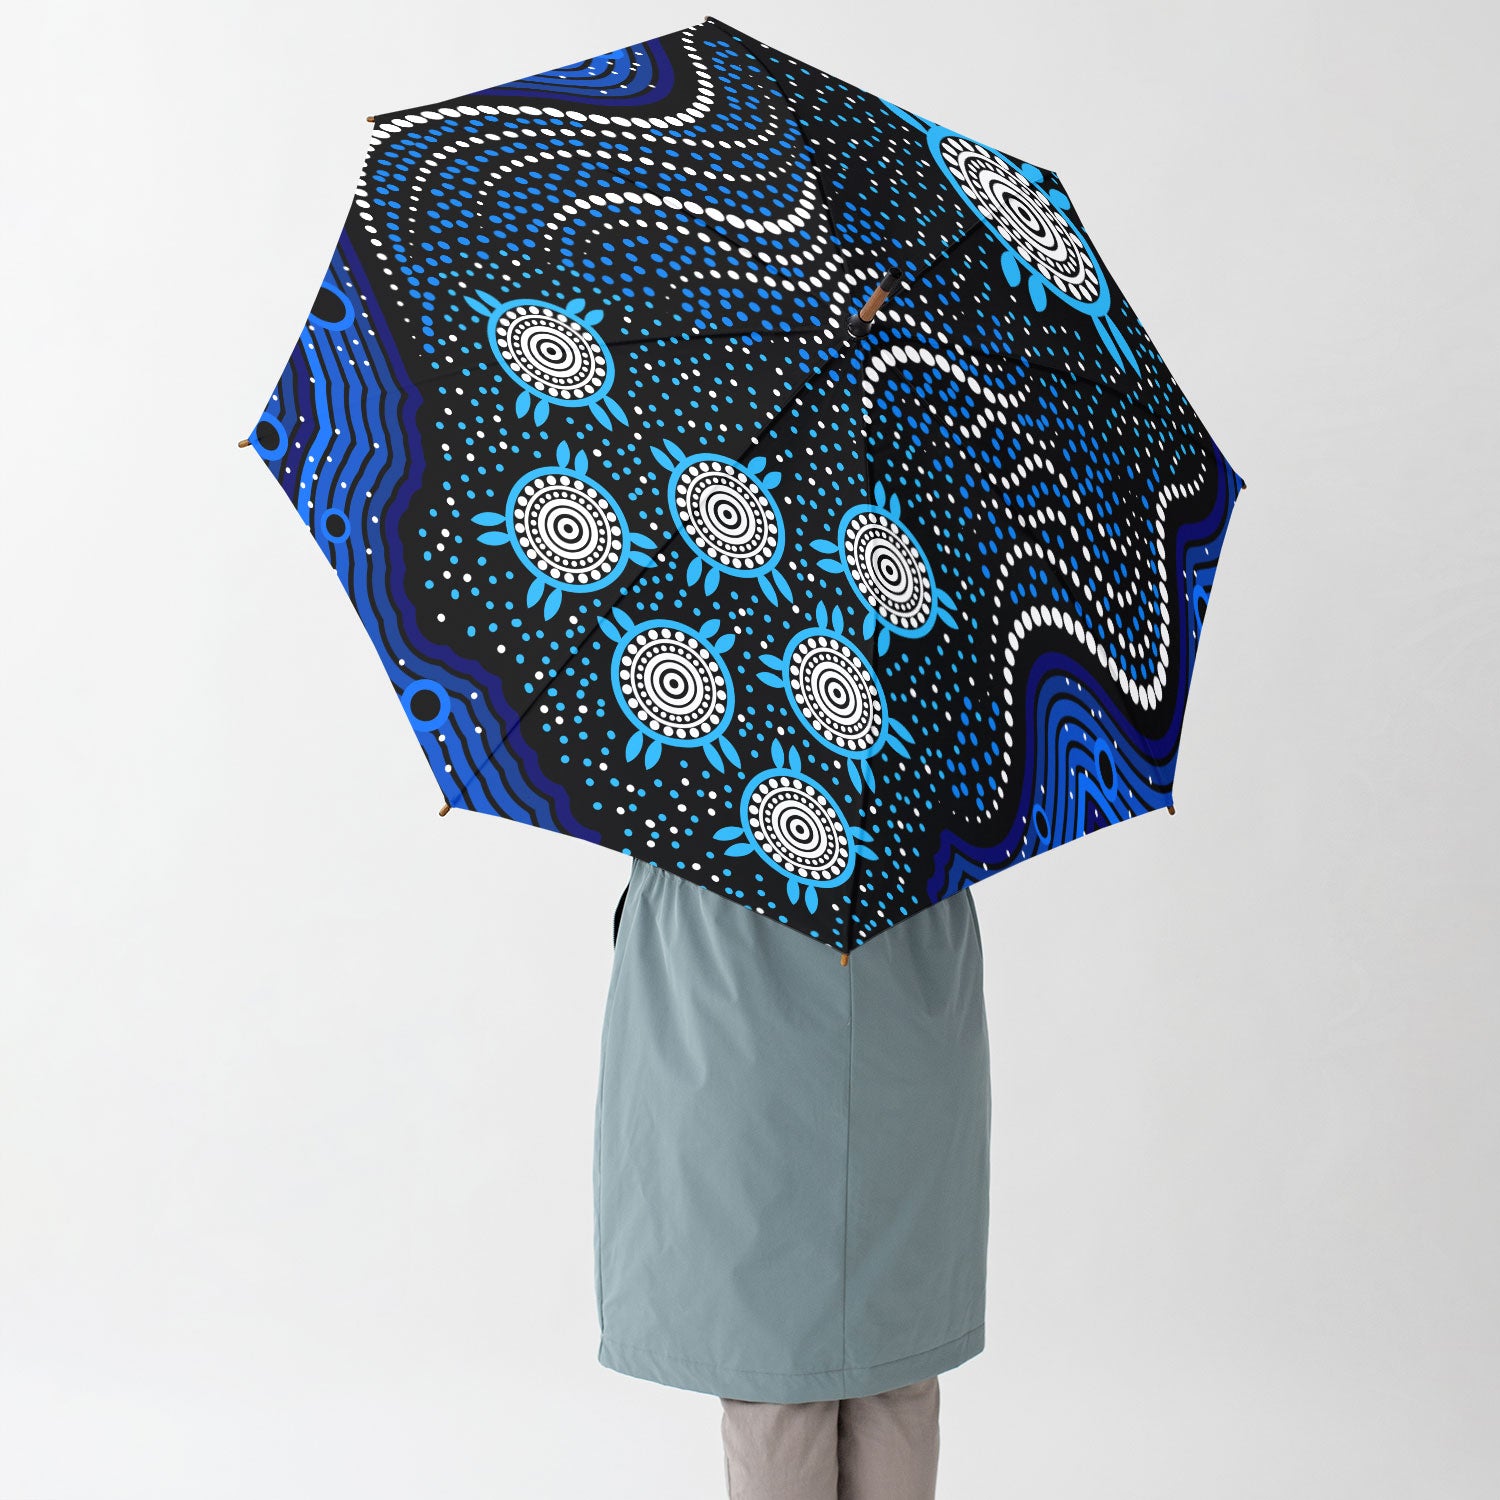 Australia Aboriginal Umbrella Aboriginal Inspired background dreaming blue Umbrella